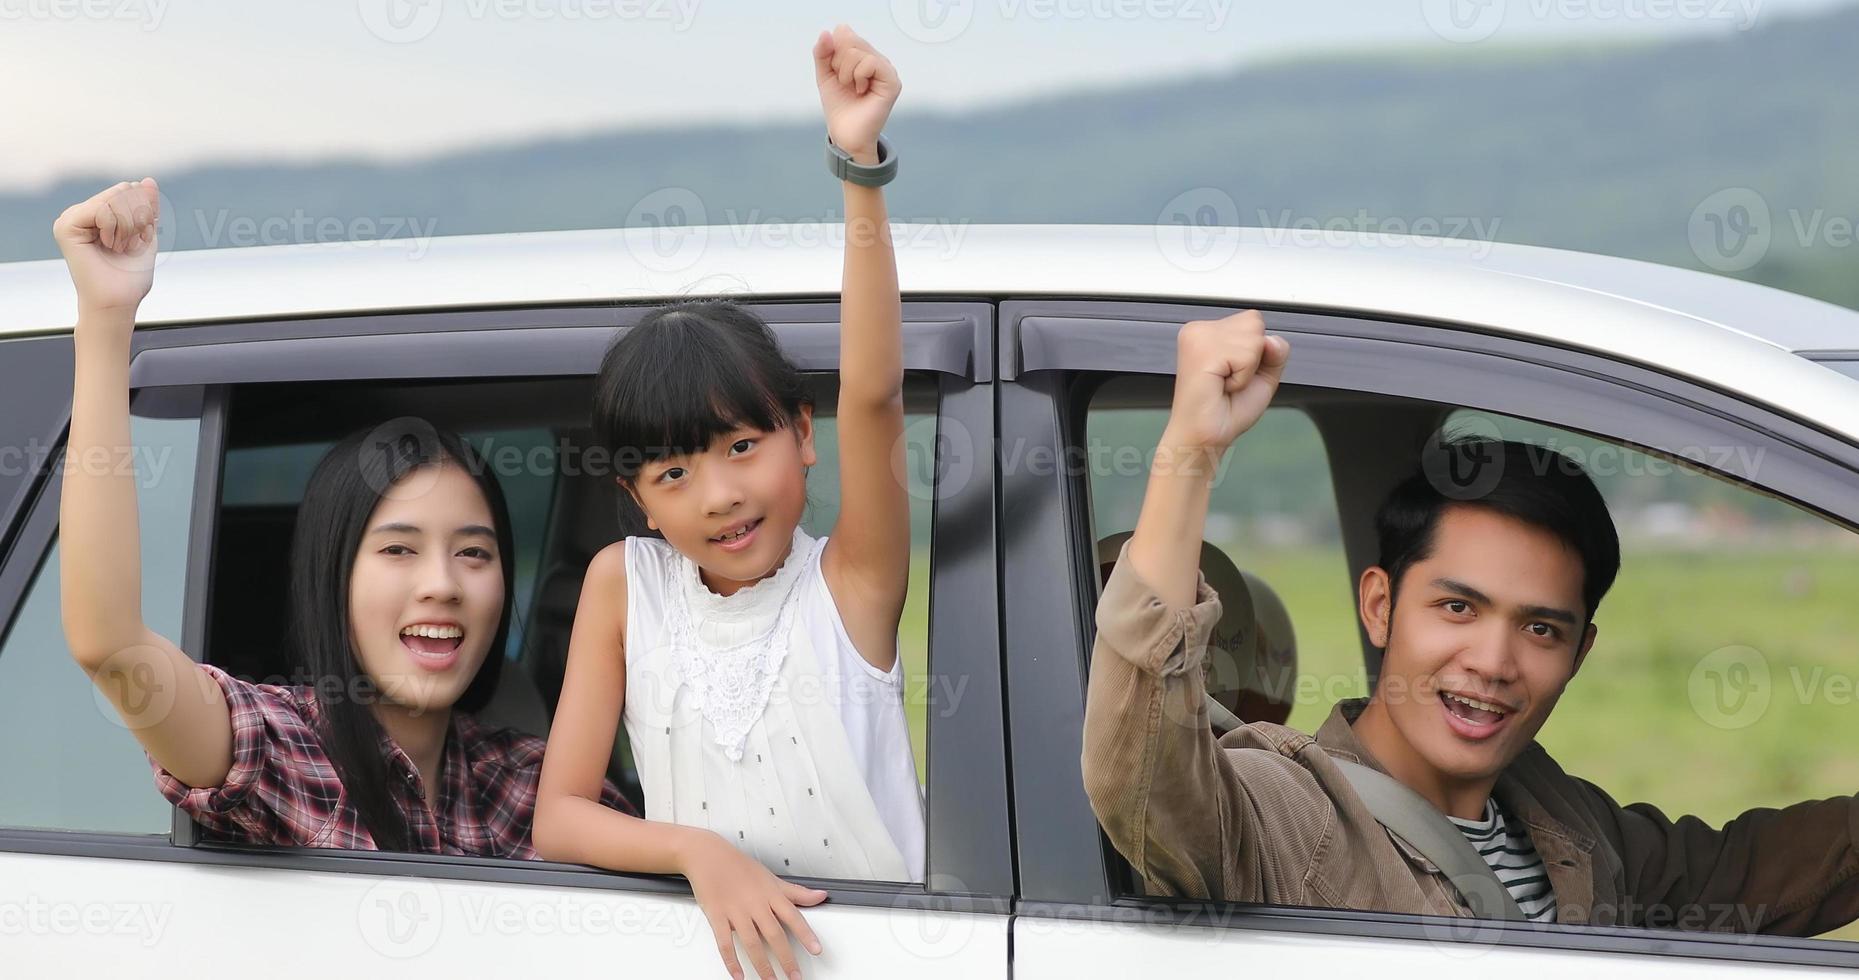 gelukkig klein meisje met aziatische familie die in de auto zit om te genieten van een roadtrip en zomervakantie in een camper foto